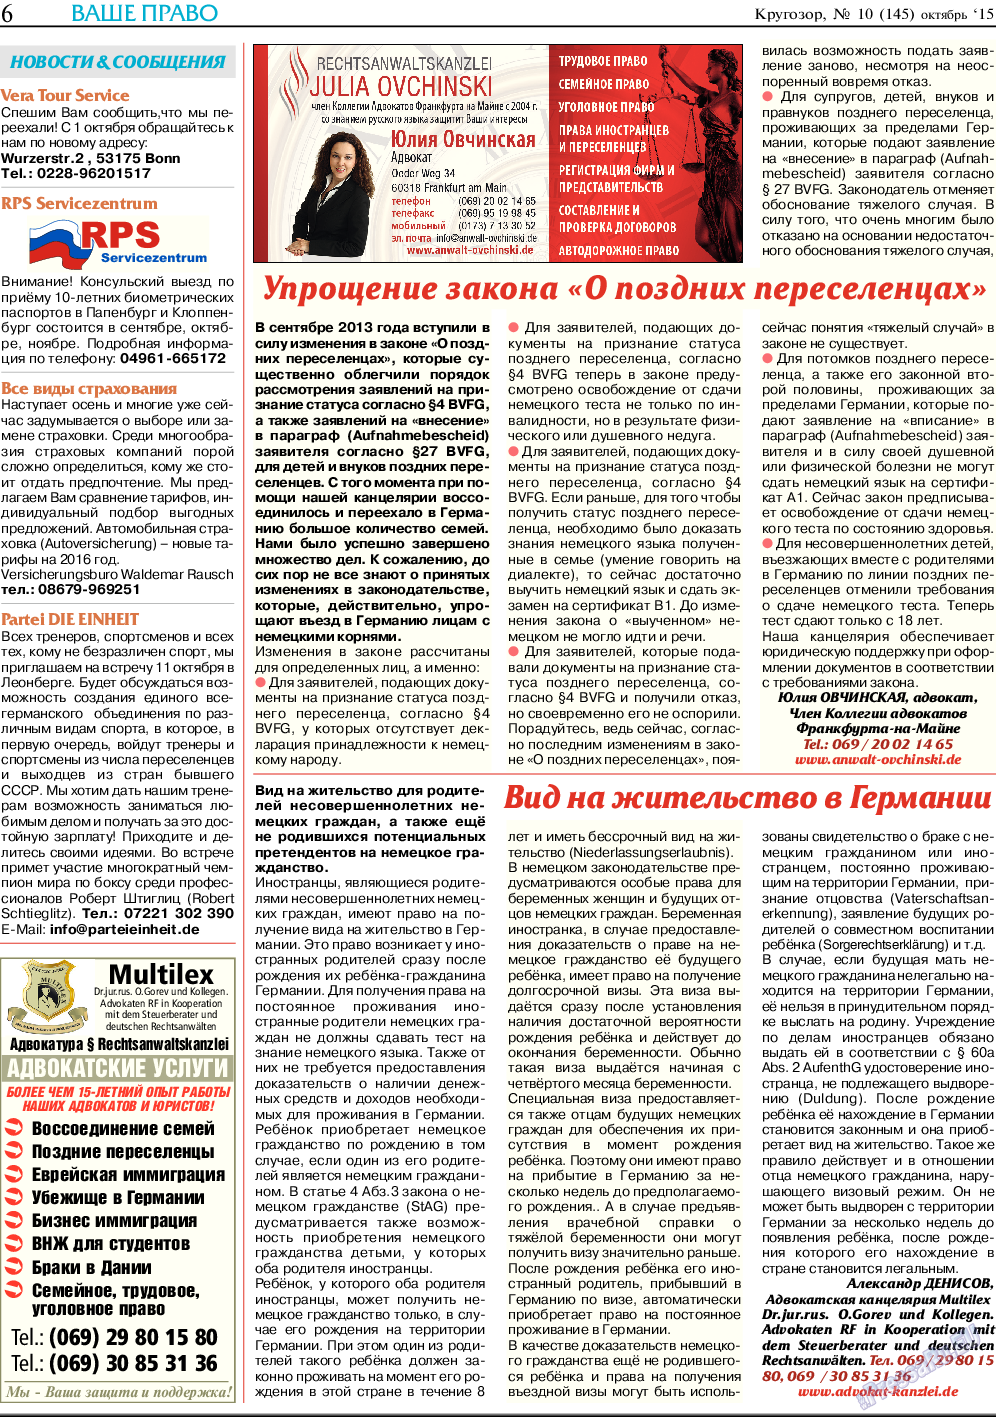 Кругозор (газета). 2015 год, номер 10, стр. 6